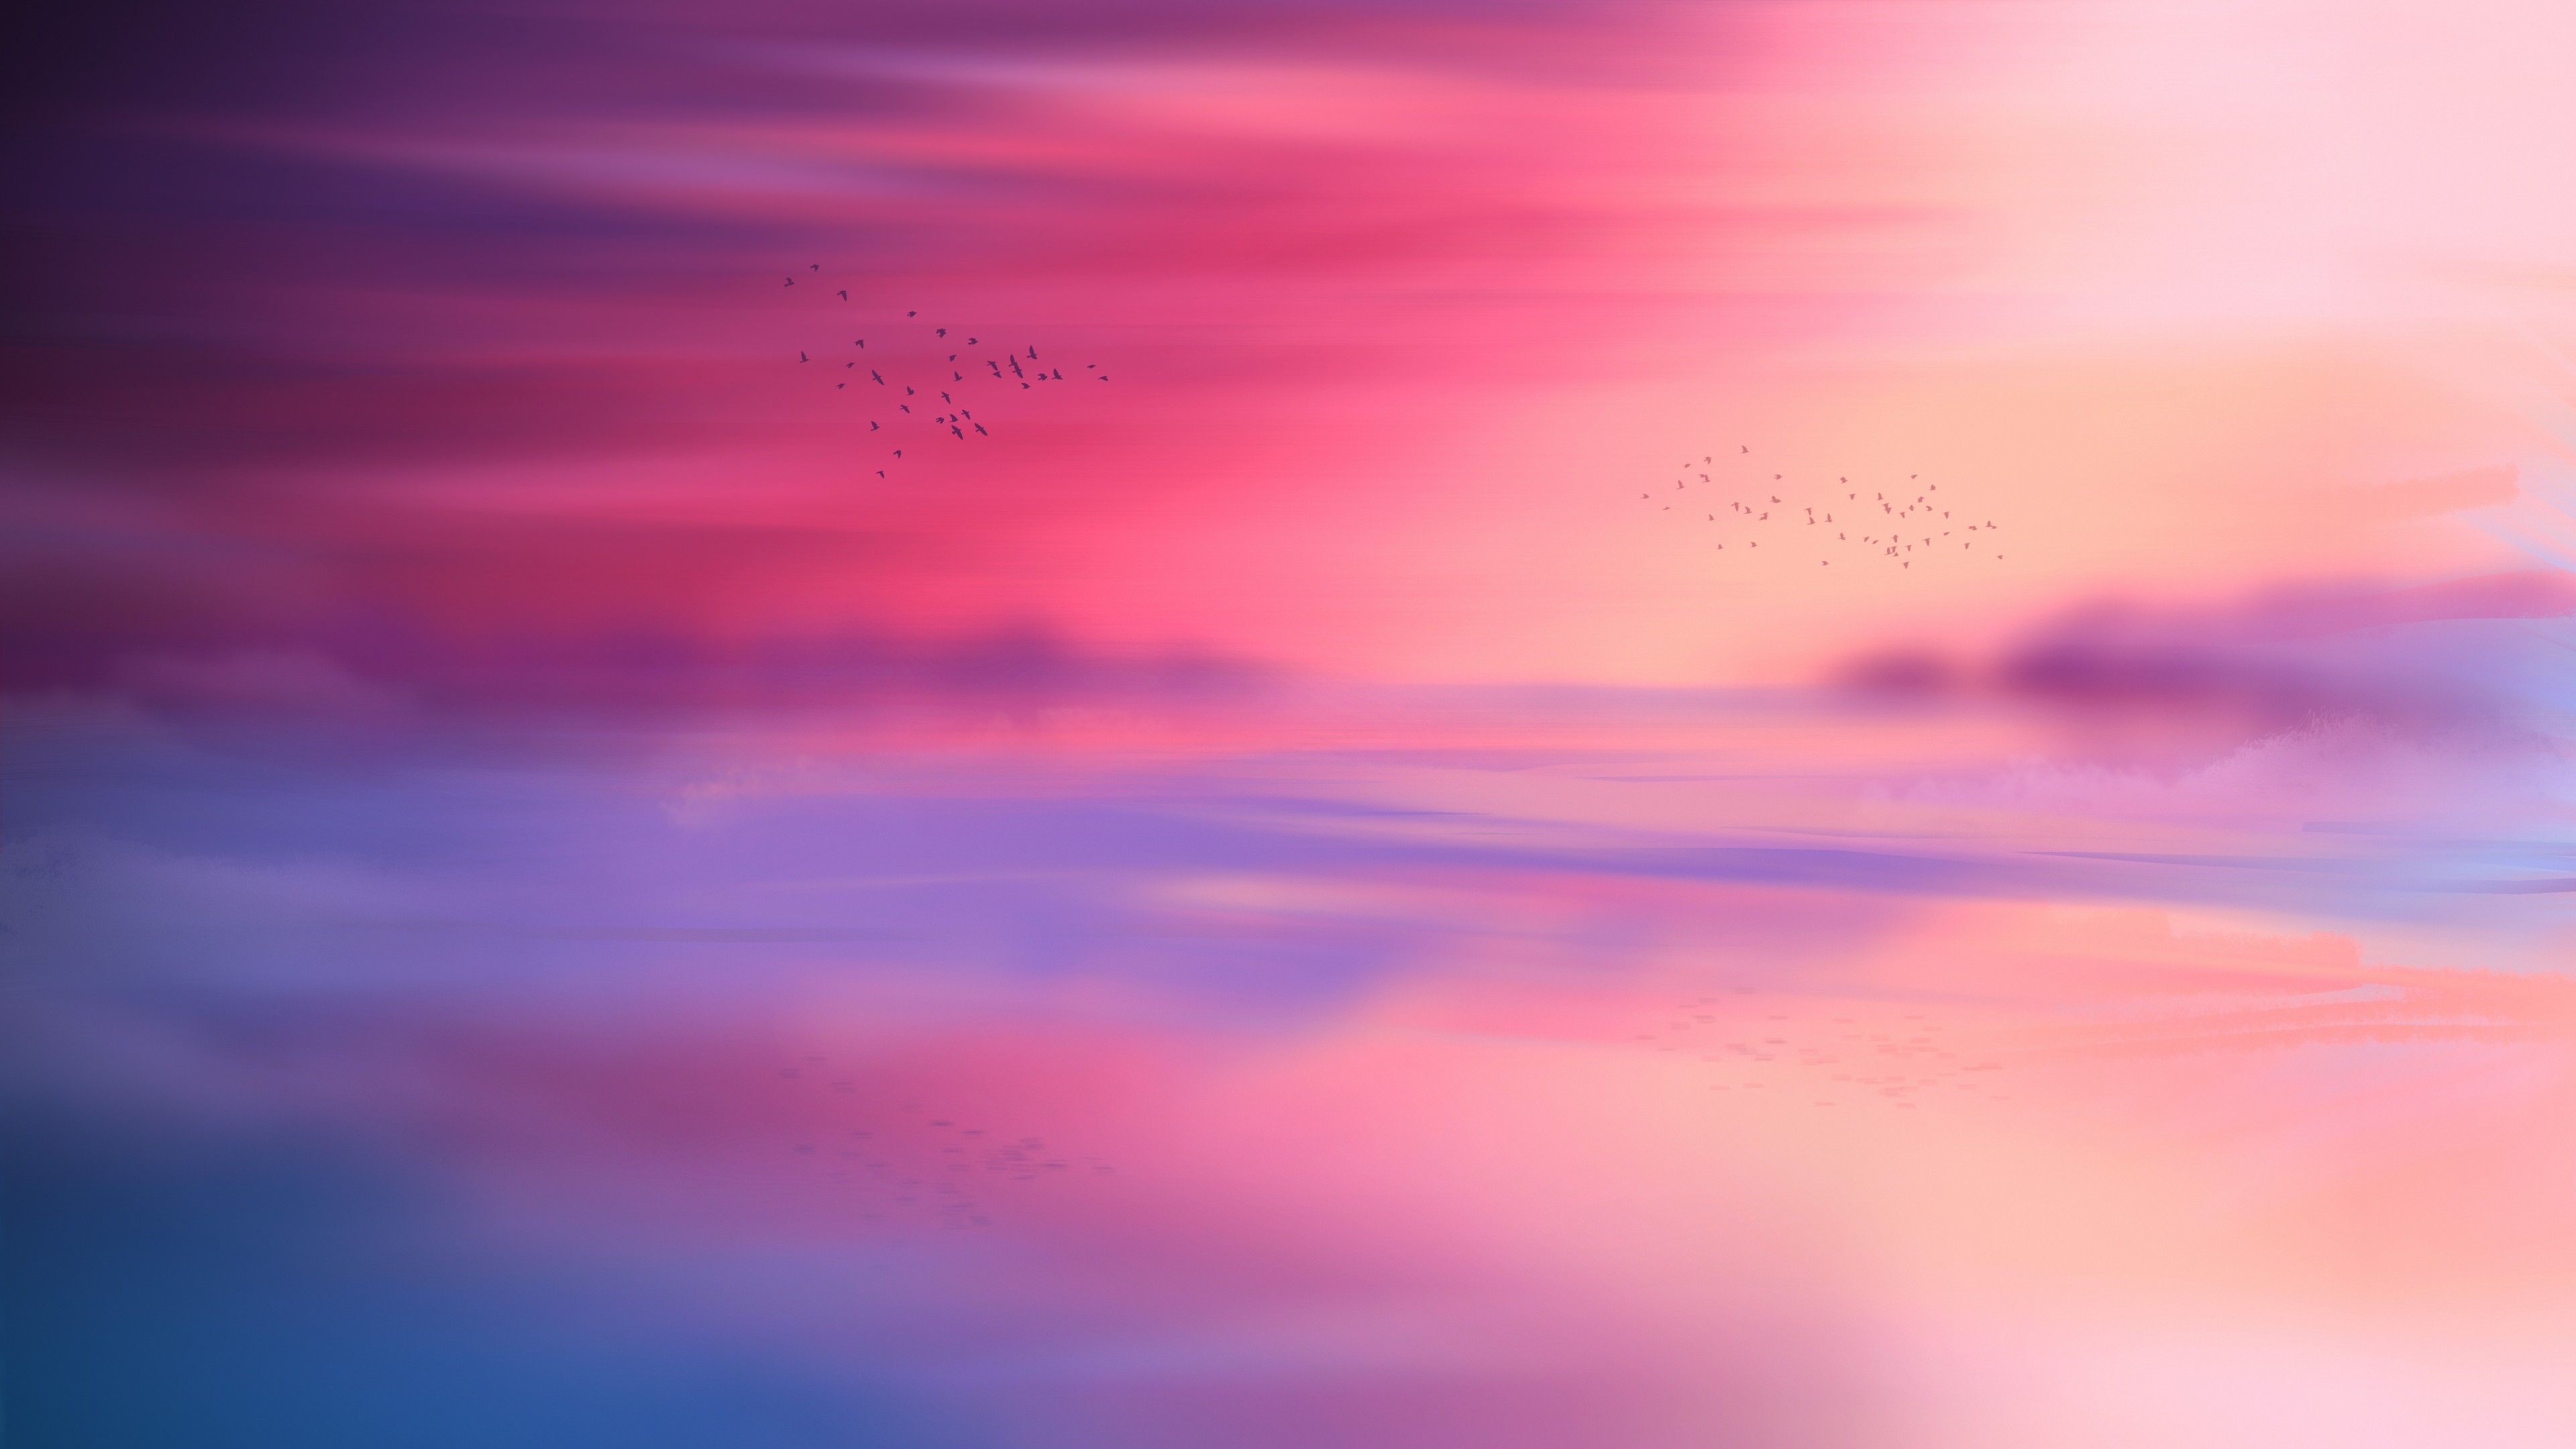 Pink sky 4K Wallpaper, Horizon, Scenic, Flying birds, Seascape, Sunset, Aesthetic, 5K, 8K, Nature